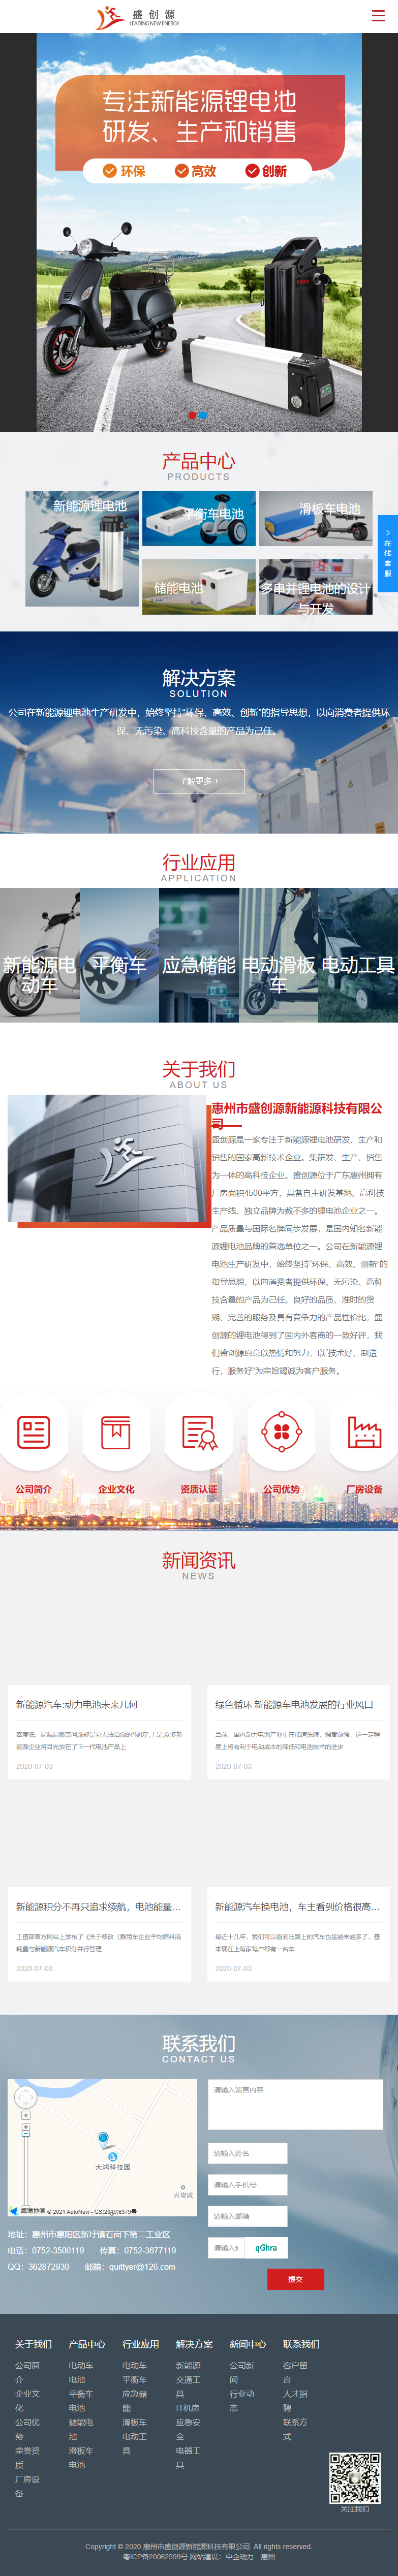 惠州市盛创源新能源科技有限公司网站案例